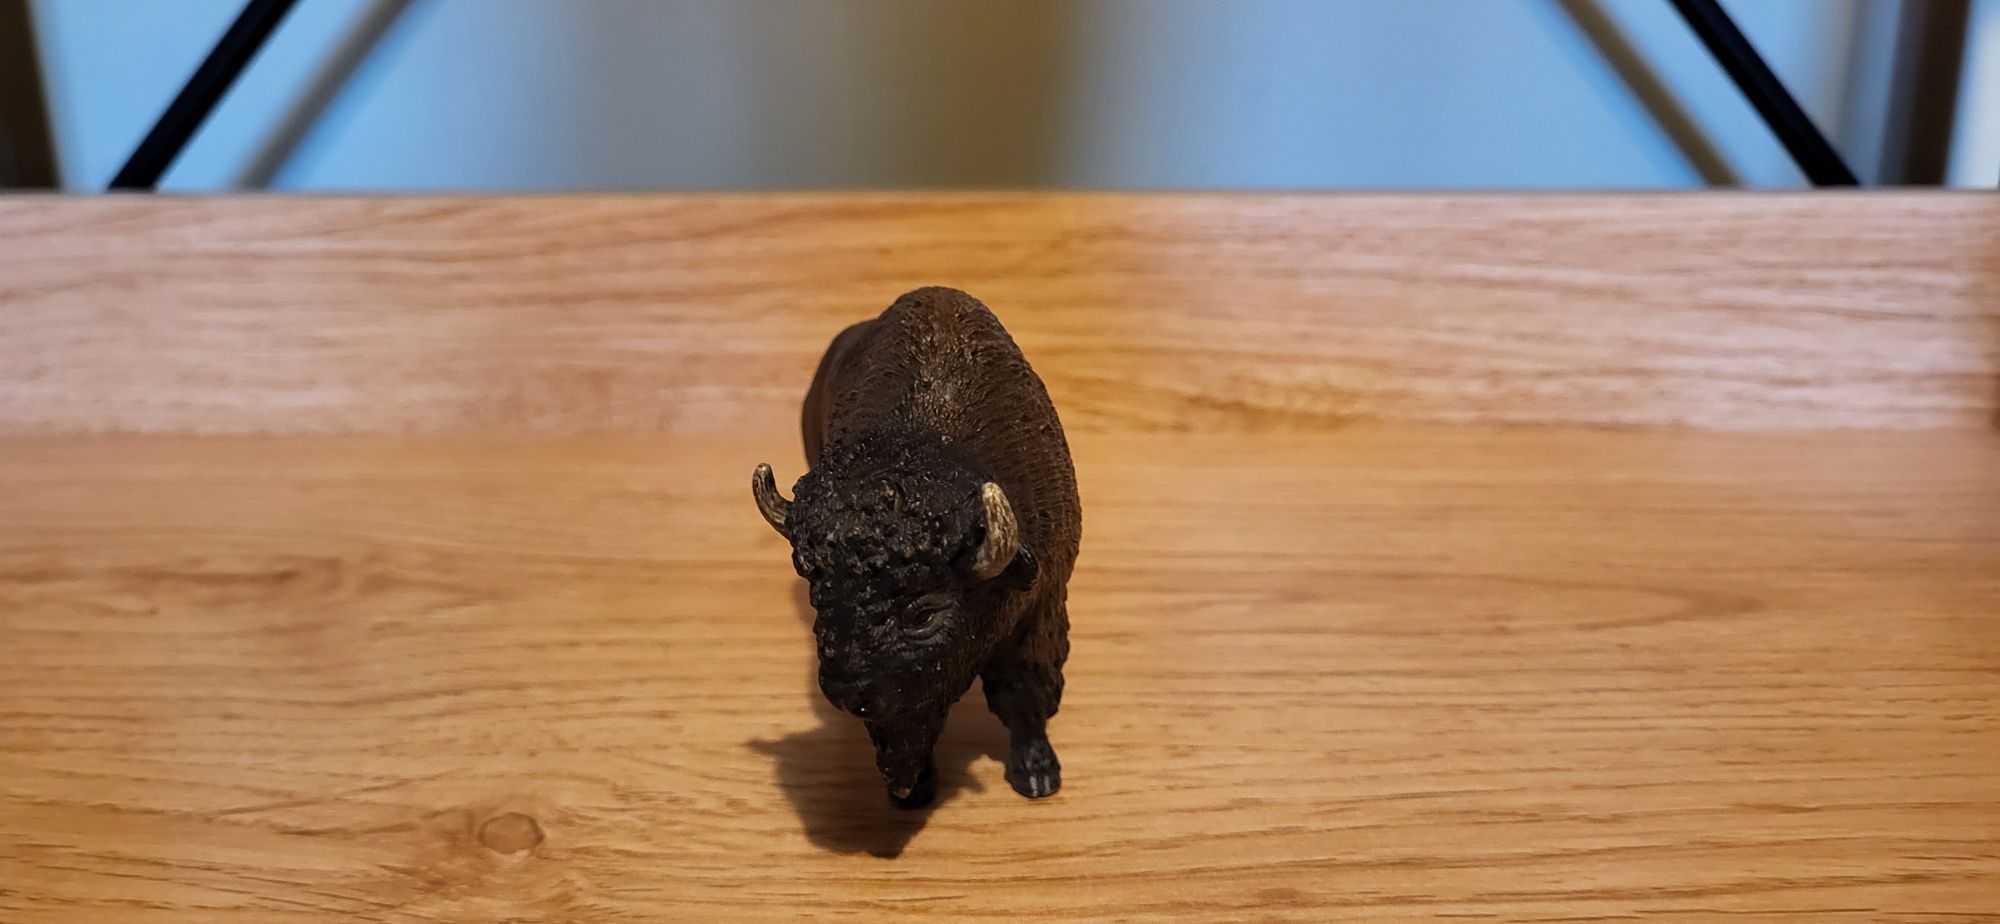 Schleich bizon amerykański figurka model wycofany z 2013 r.